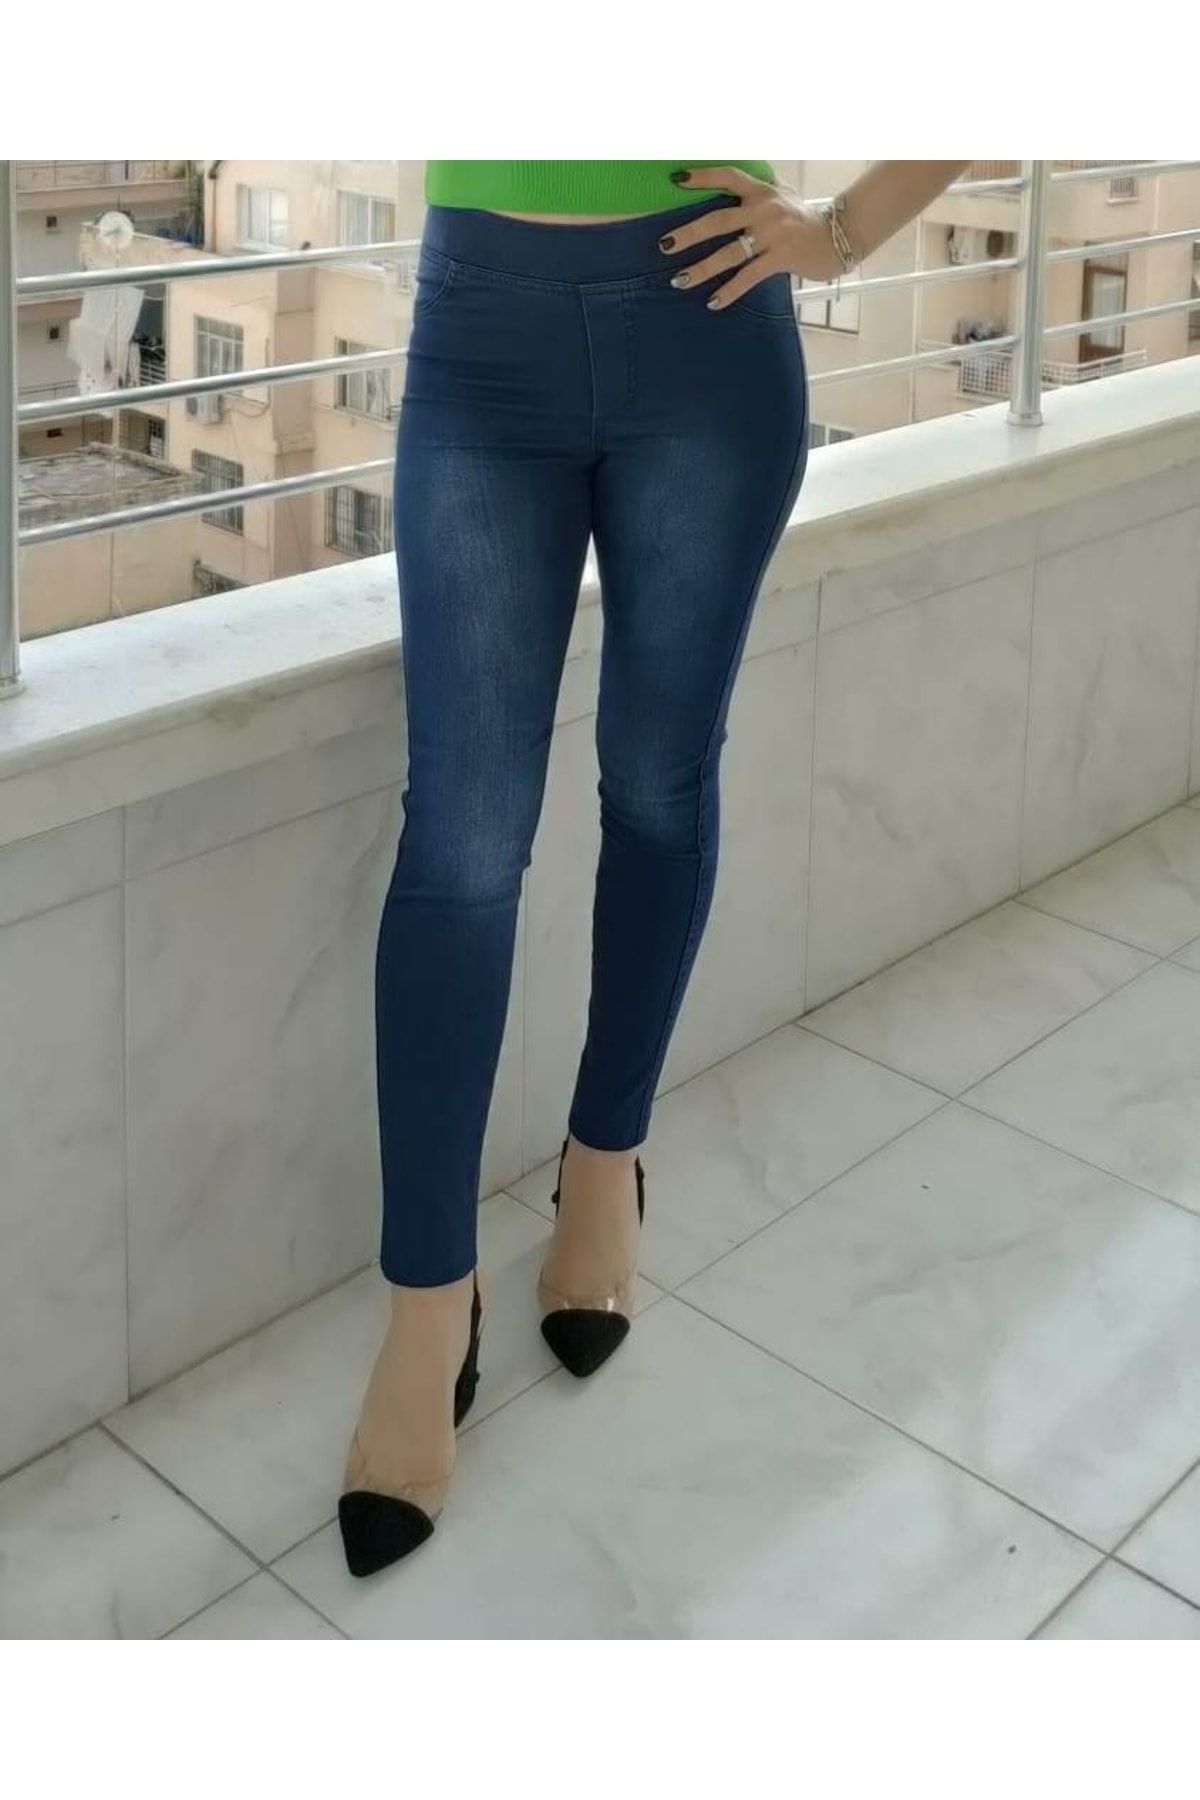 AZEM Koyu Lacivert Kadın Likralı Pantolon Tayt